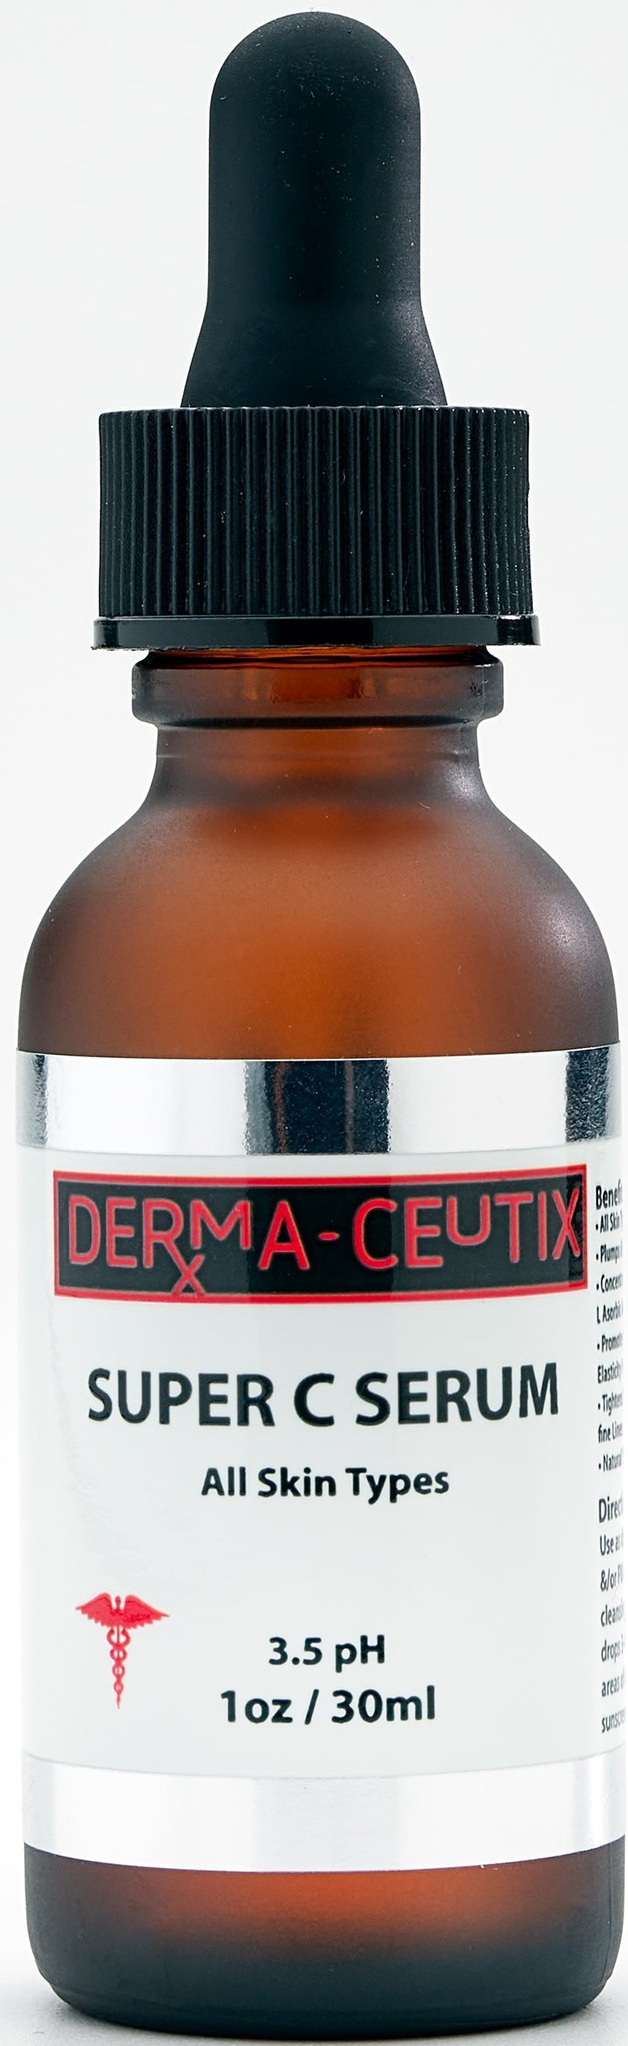 Derma-ceutix Super C Serum